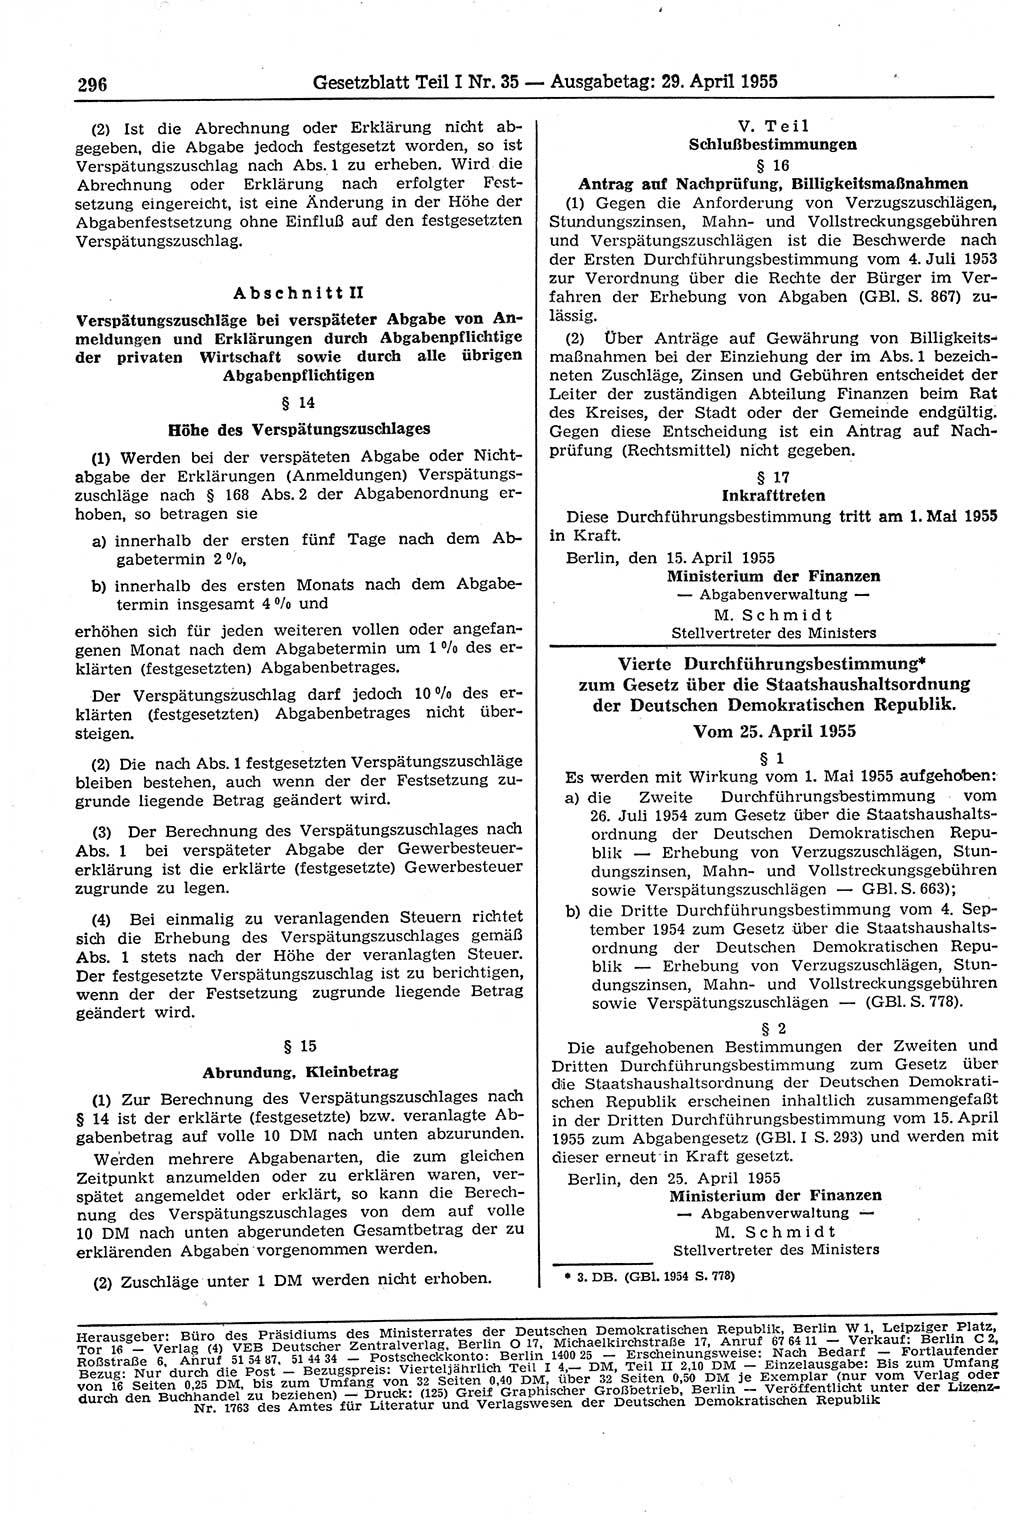 Gesetzblatt (GBl.) der Deutschen Demokratischen Republik (DDR) Teil Ⅰ 1955, Seite 296 (GBl. DDR Ⅰ 1955, S. 296)